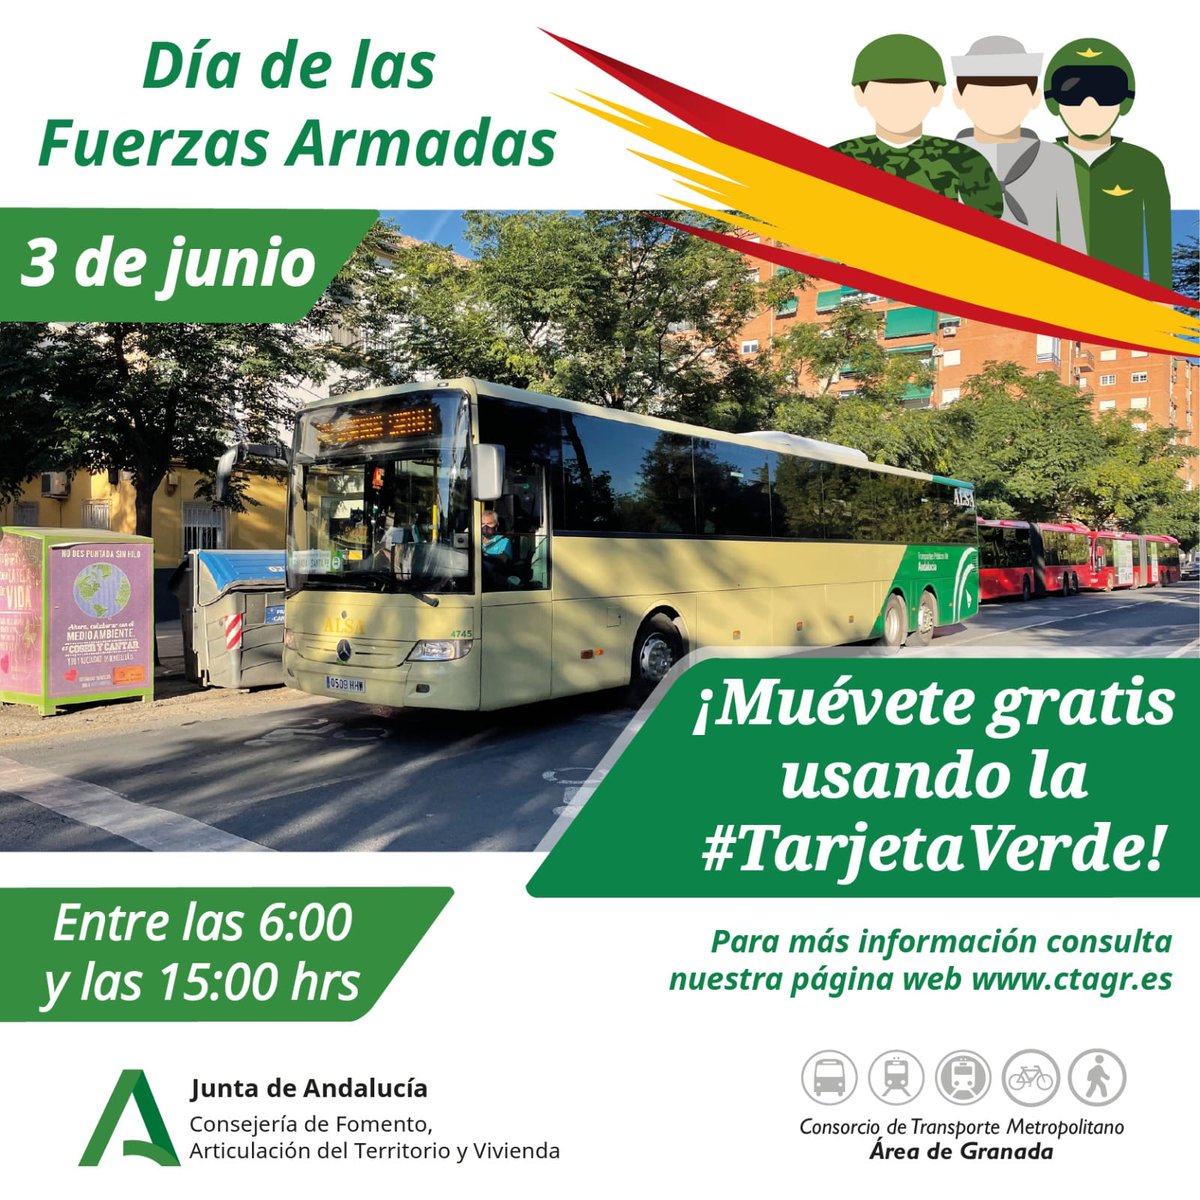 🪖 🇪🇸  Disfruta mañana del #DíadelasFuerzasArmadas en #Granada⤵️

🟢 🚍  ¡¡Muévete gratis con la #TarjetaVerde del @CTransporte_GR 🧑‍✈️🇪🇦👮!!

#DíaDeLasFuerzasArmadas #DIFAS2023🇪🇸 #Granada #Transportepúblico